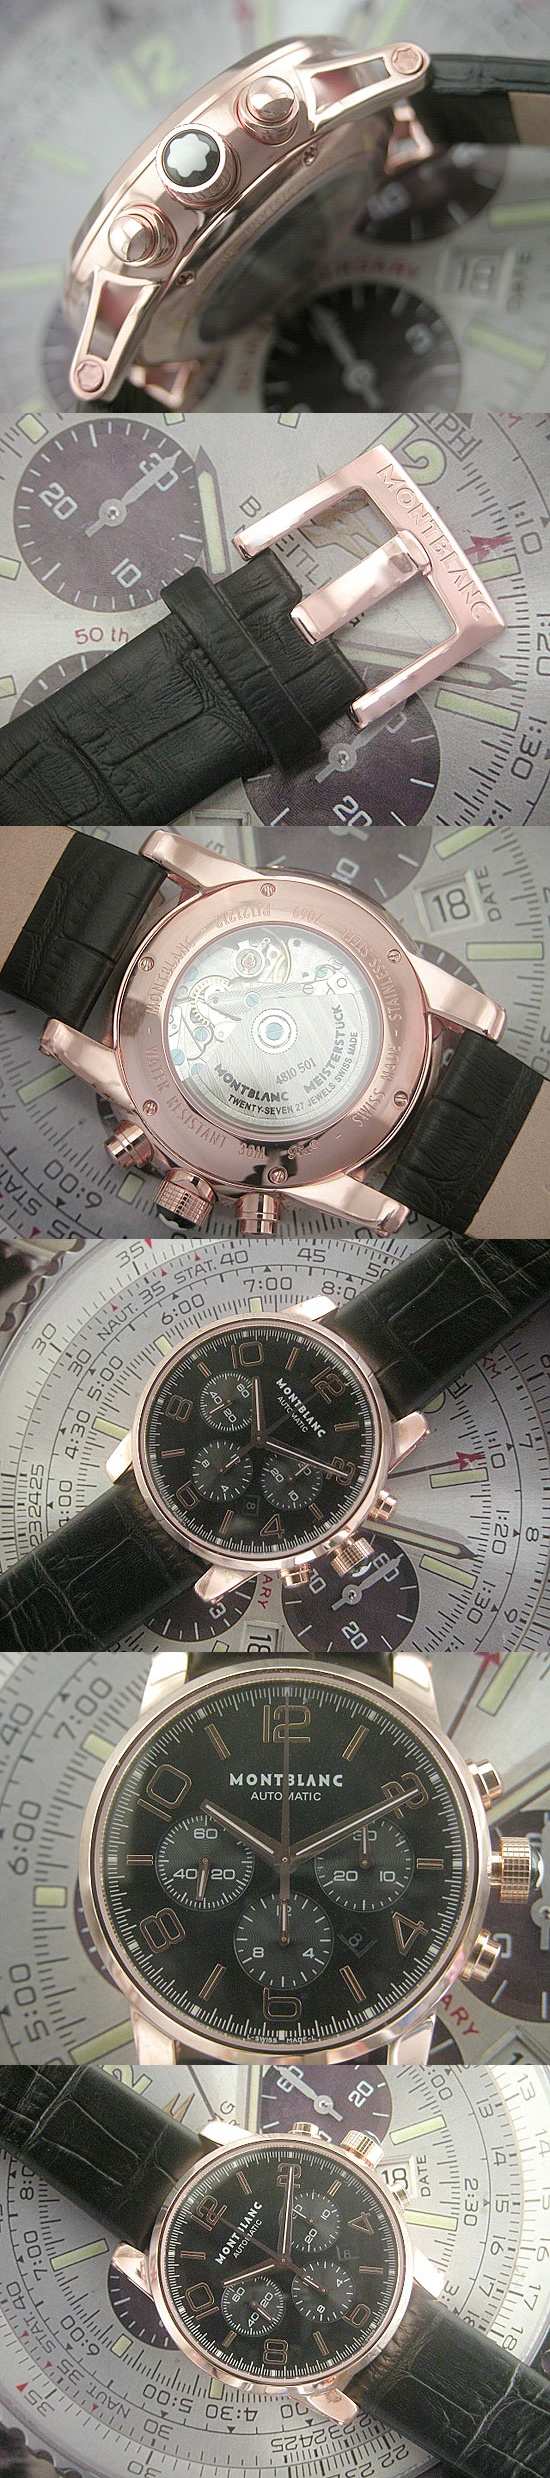 おしゃれなブランド時計がMONTBLANC-モンブラン-101548-ab 男性用腕時計を提供します.